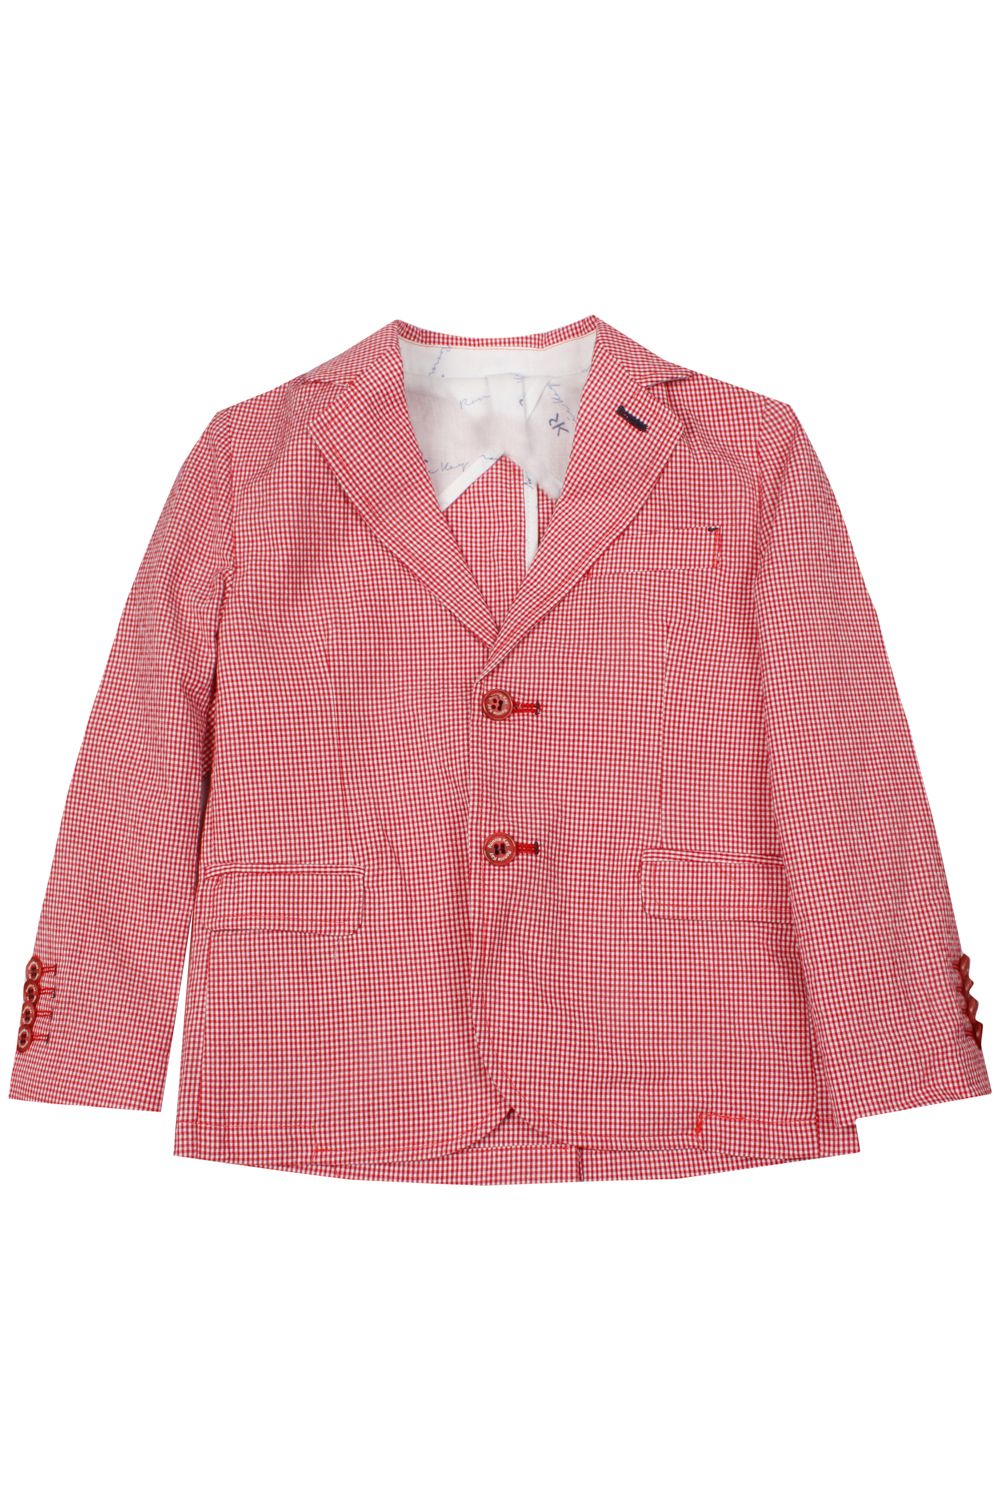 Пиджак Ronnie Kay, размер 110, цвет красный RK1325 - фото 1